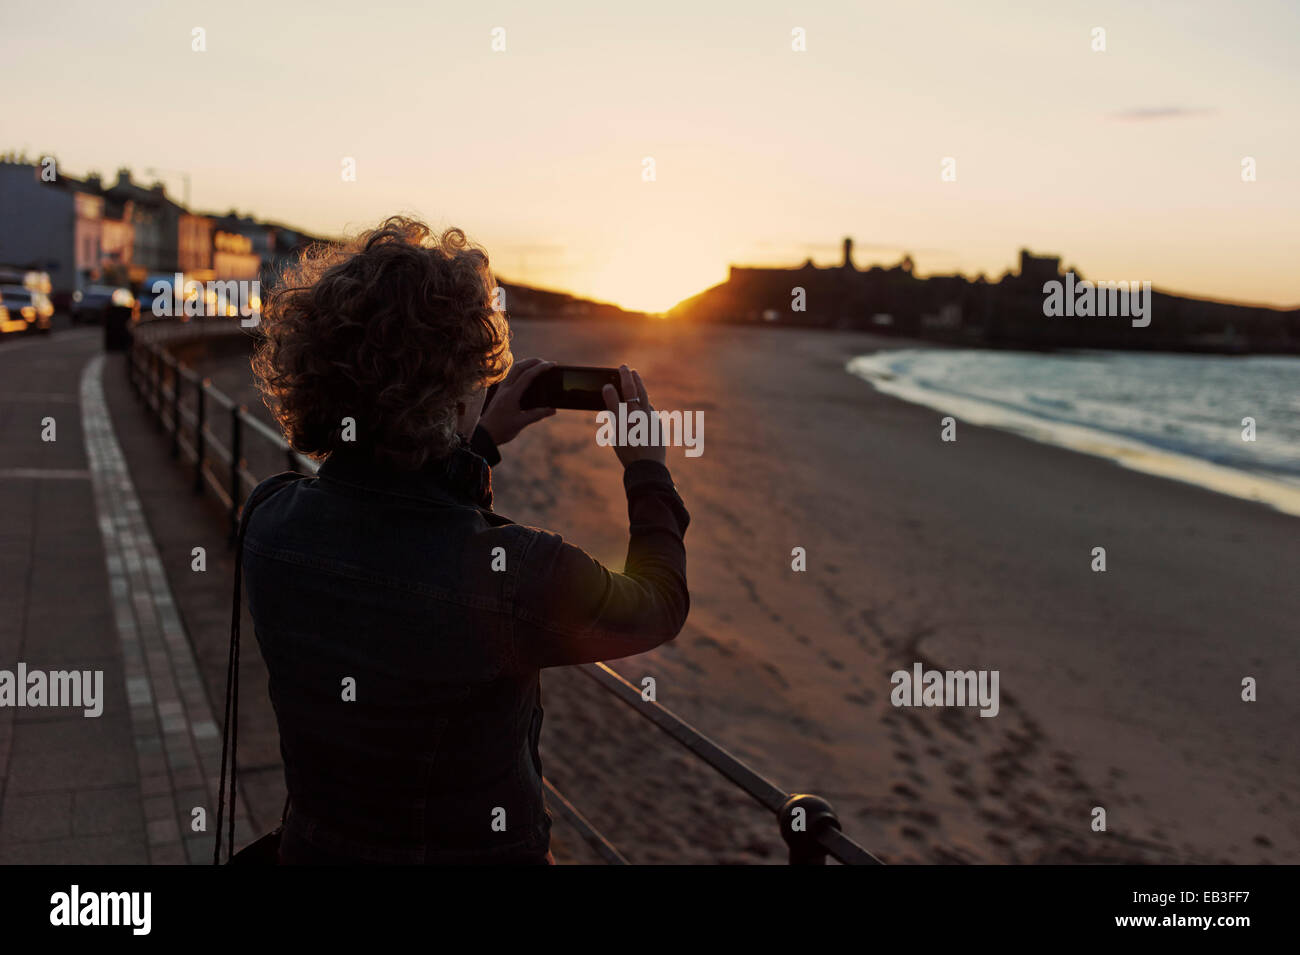 Mujer toma iphone foto de Sunset y el castillo Foto de stock